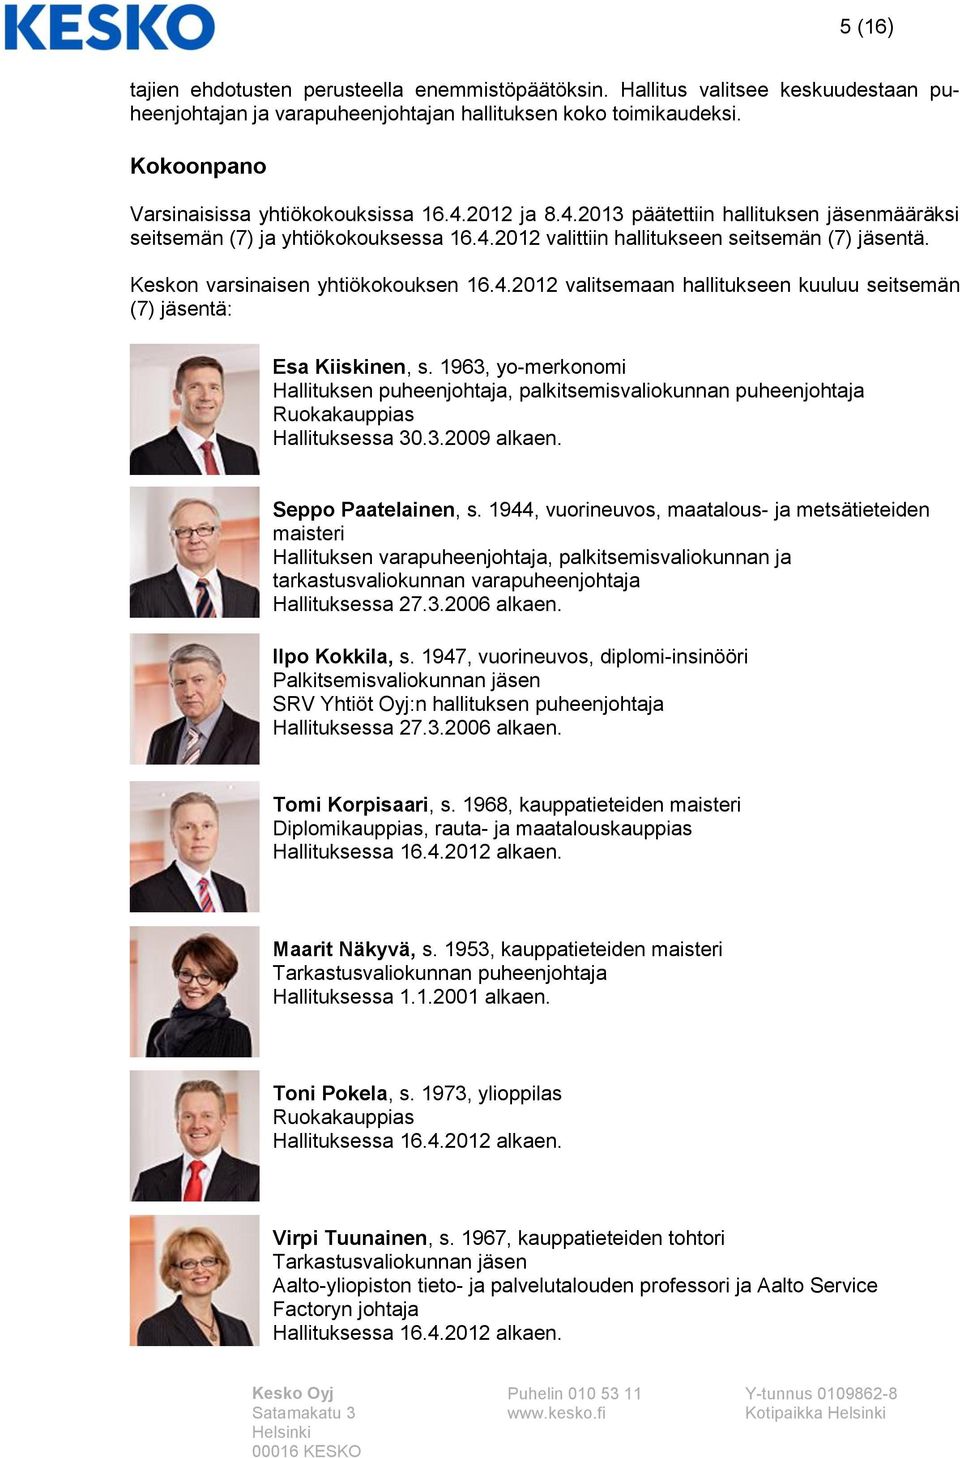 Keskon varsinaisen yhtiökokouksen 16.4.2012 valitsemaan hallitukseen kuuluu seitsemän (7) jäsentä: Esa Kiiskinen, s.